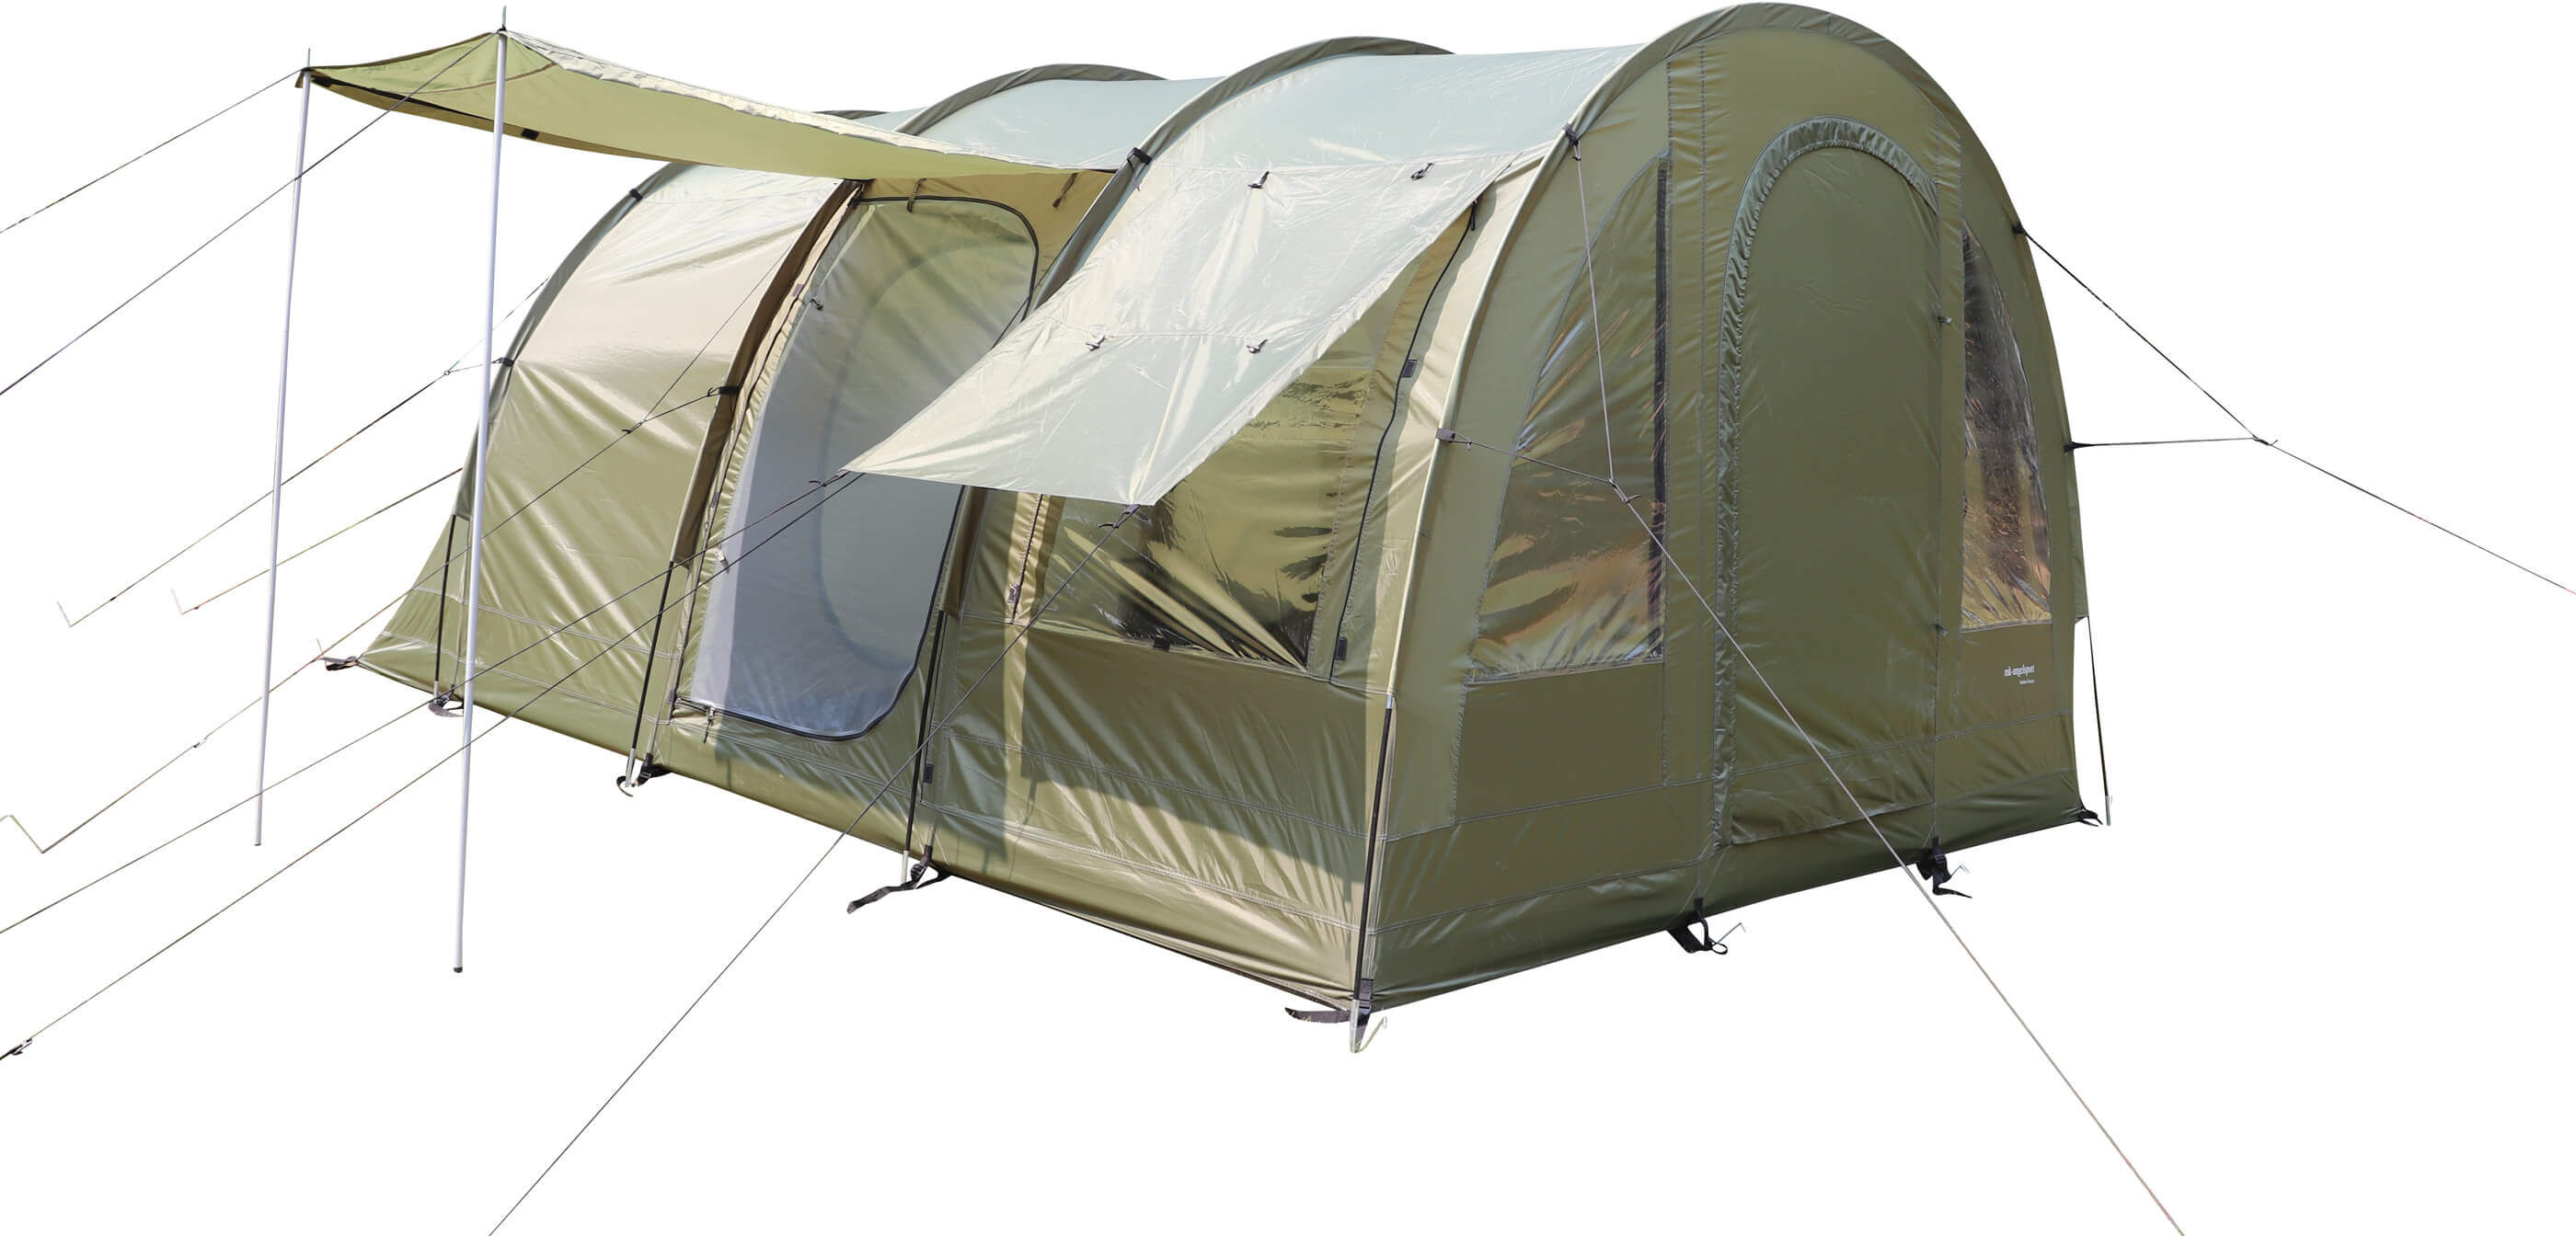 Das Campingzelt eignet sich perfekt für Familien oder Freunde, die einen längeren Aufenthalt im Zelt planen.